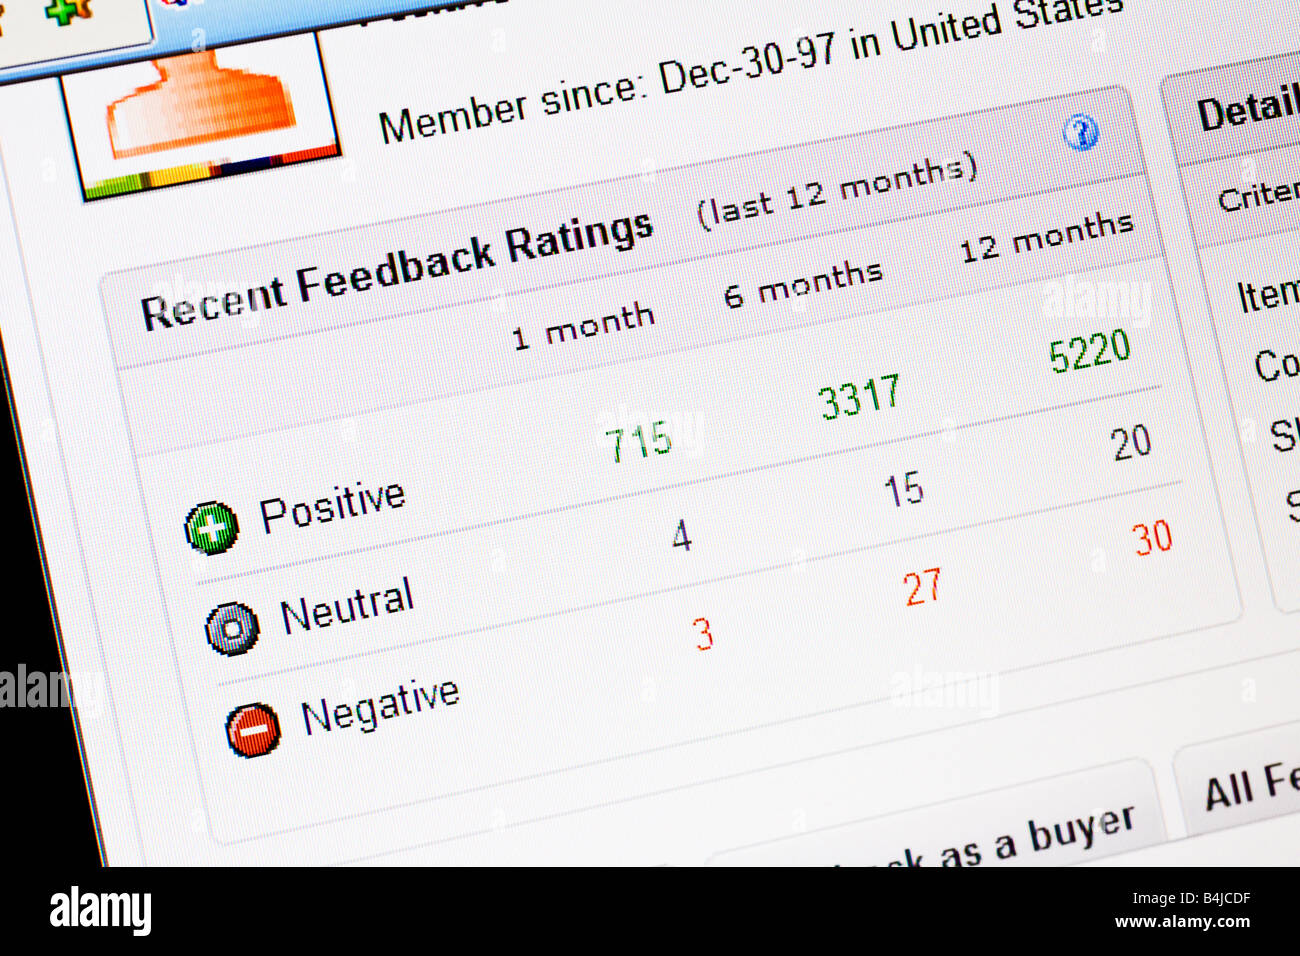 Sito web di Ebay account commenti e suggerimenti che mostra la schermata neutrale positivo e negativo i punteggi di feedback Foto Stock